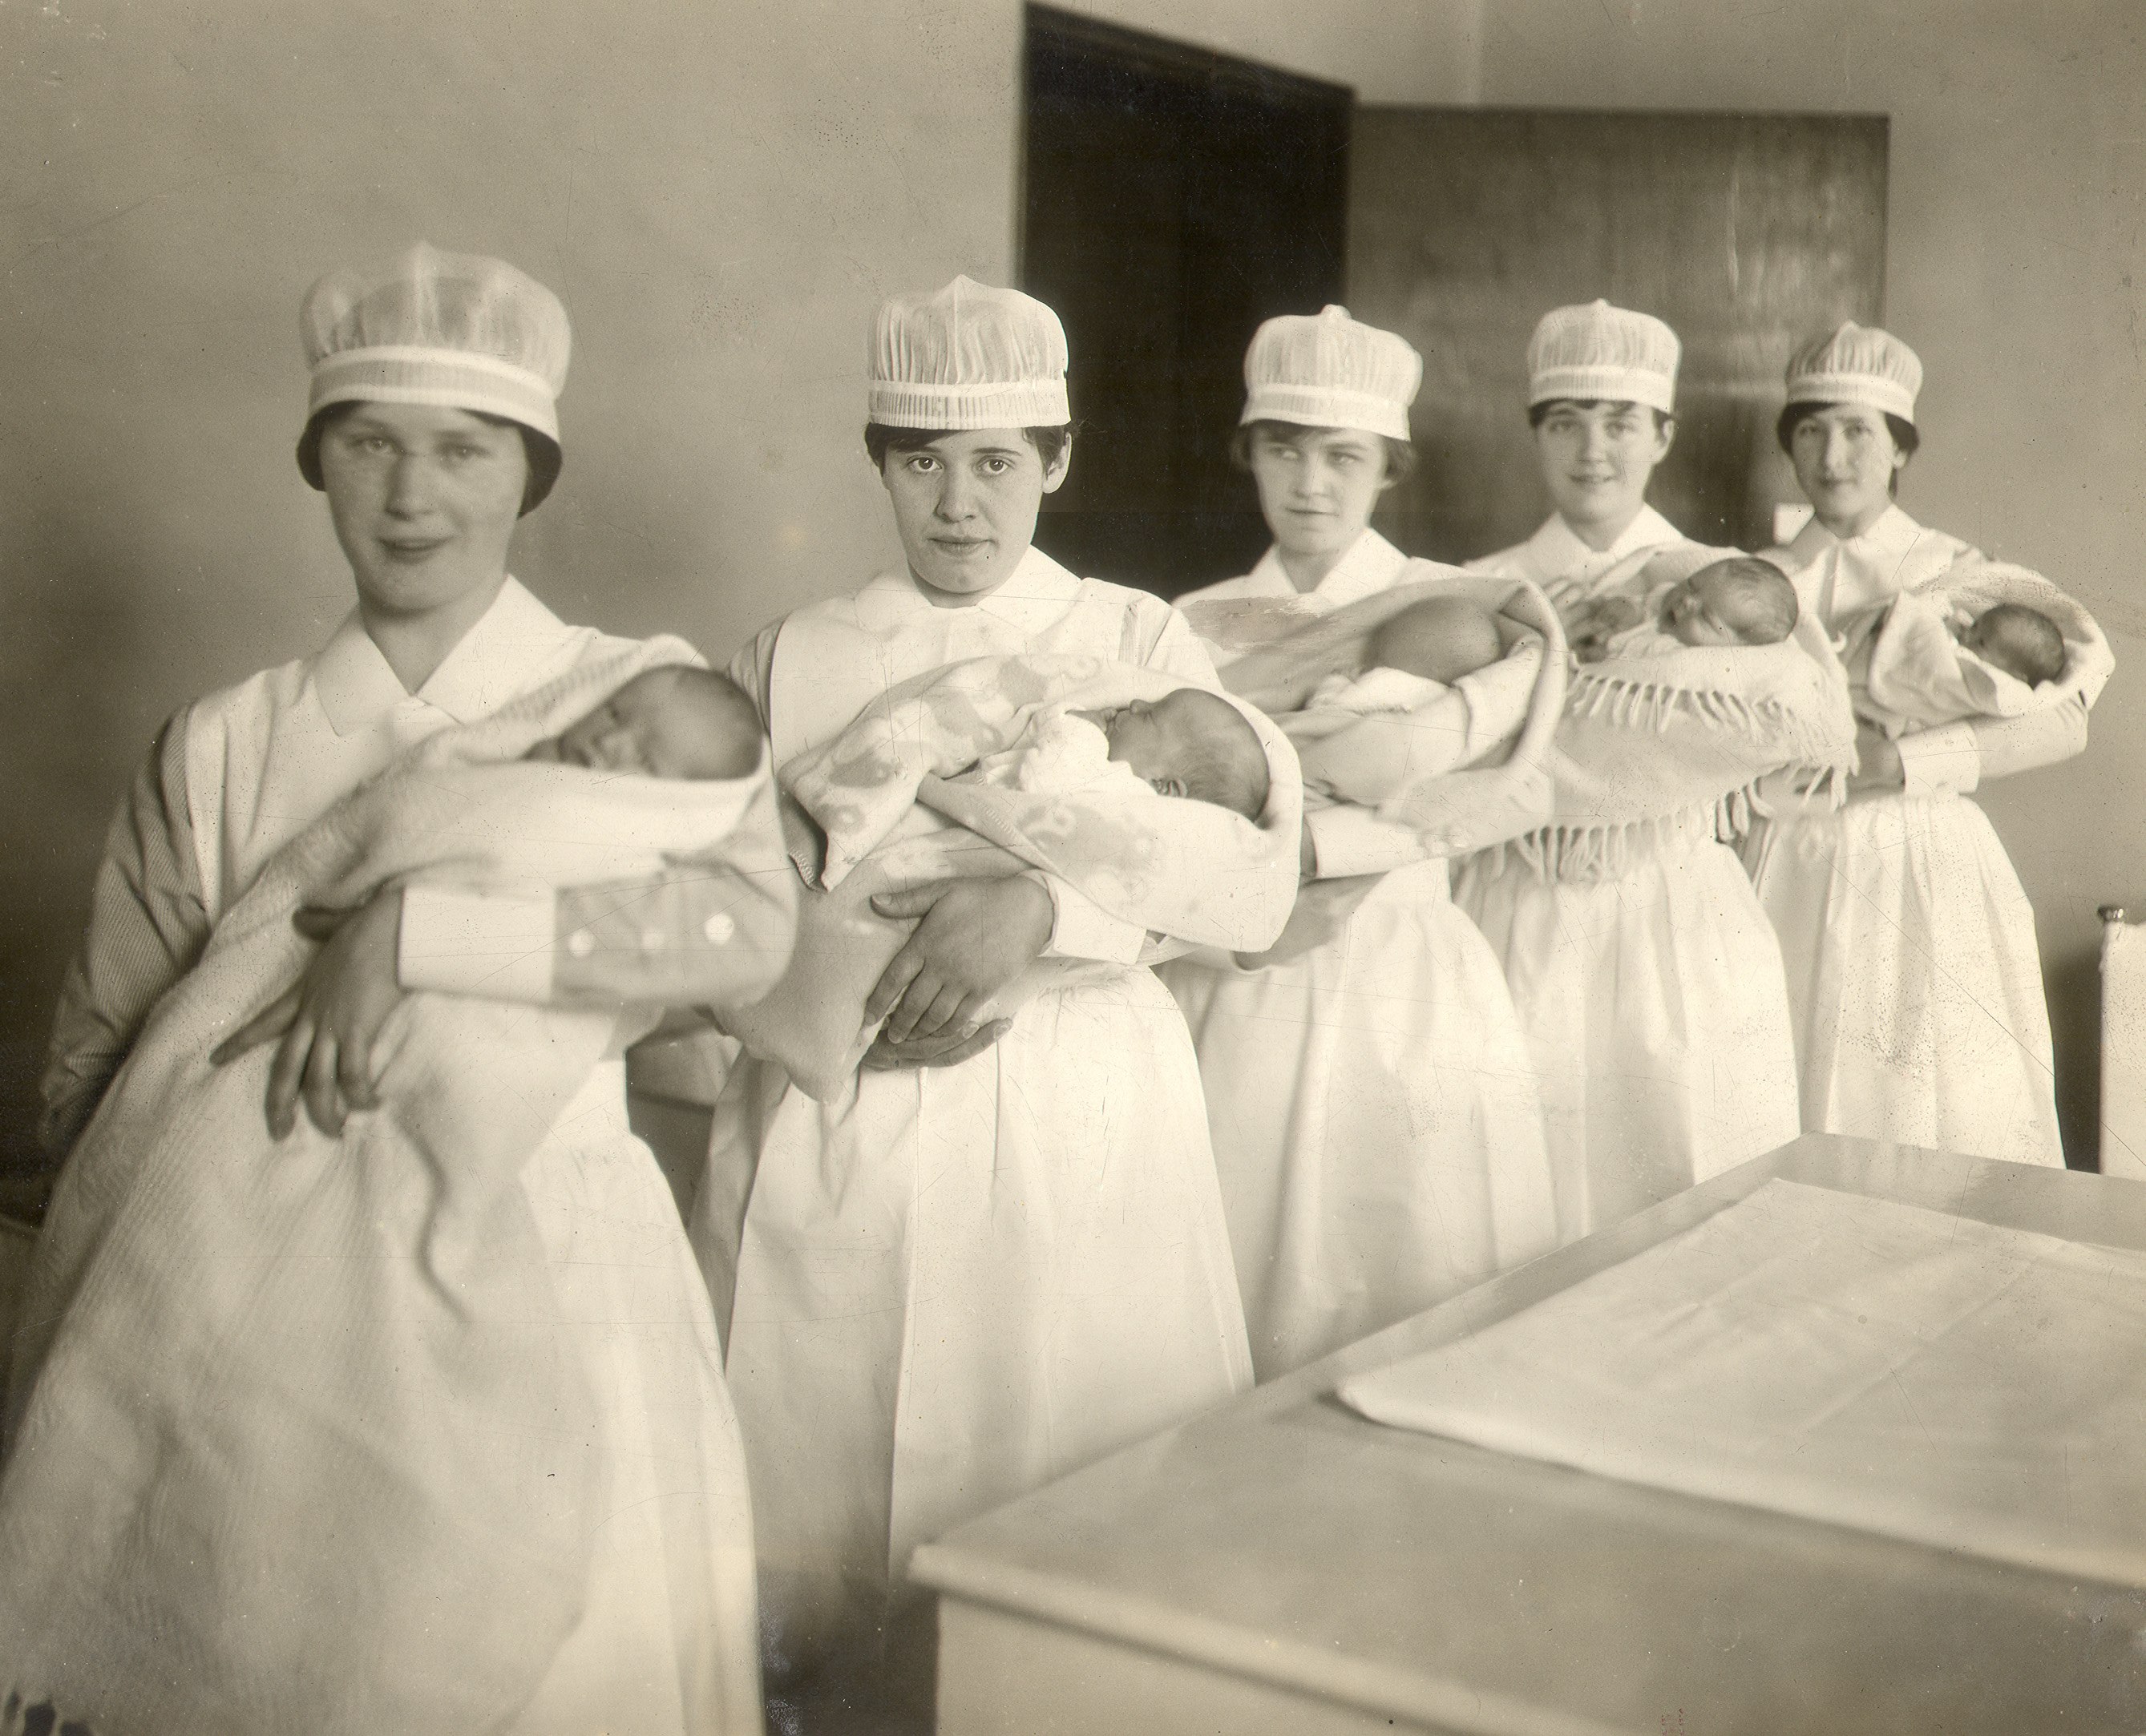 Cinq infirmières en uniforme tiennent des bébés enveloppés à côté d’une grande table dans une photo en noir et blanc.